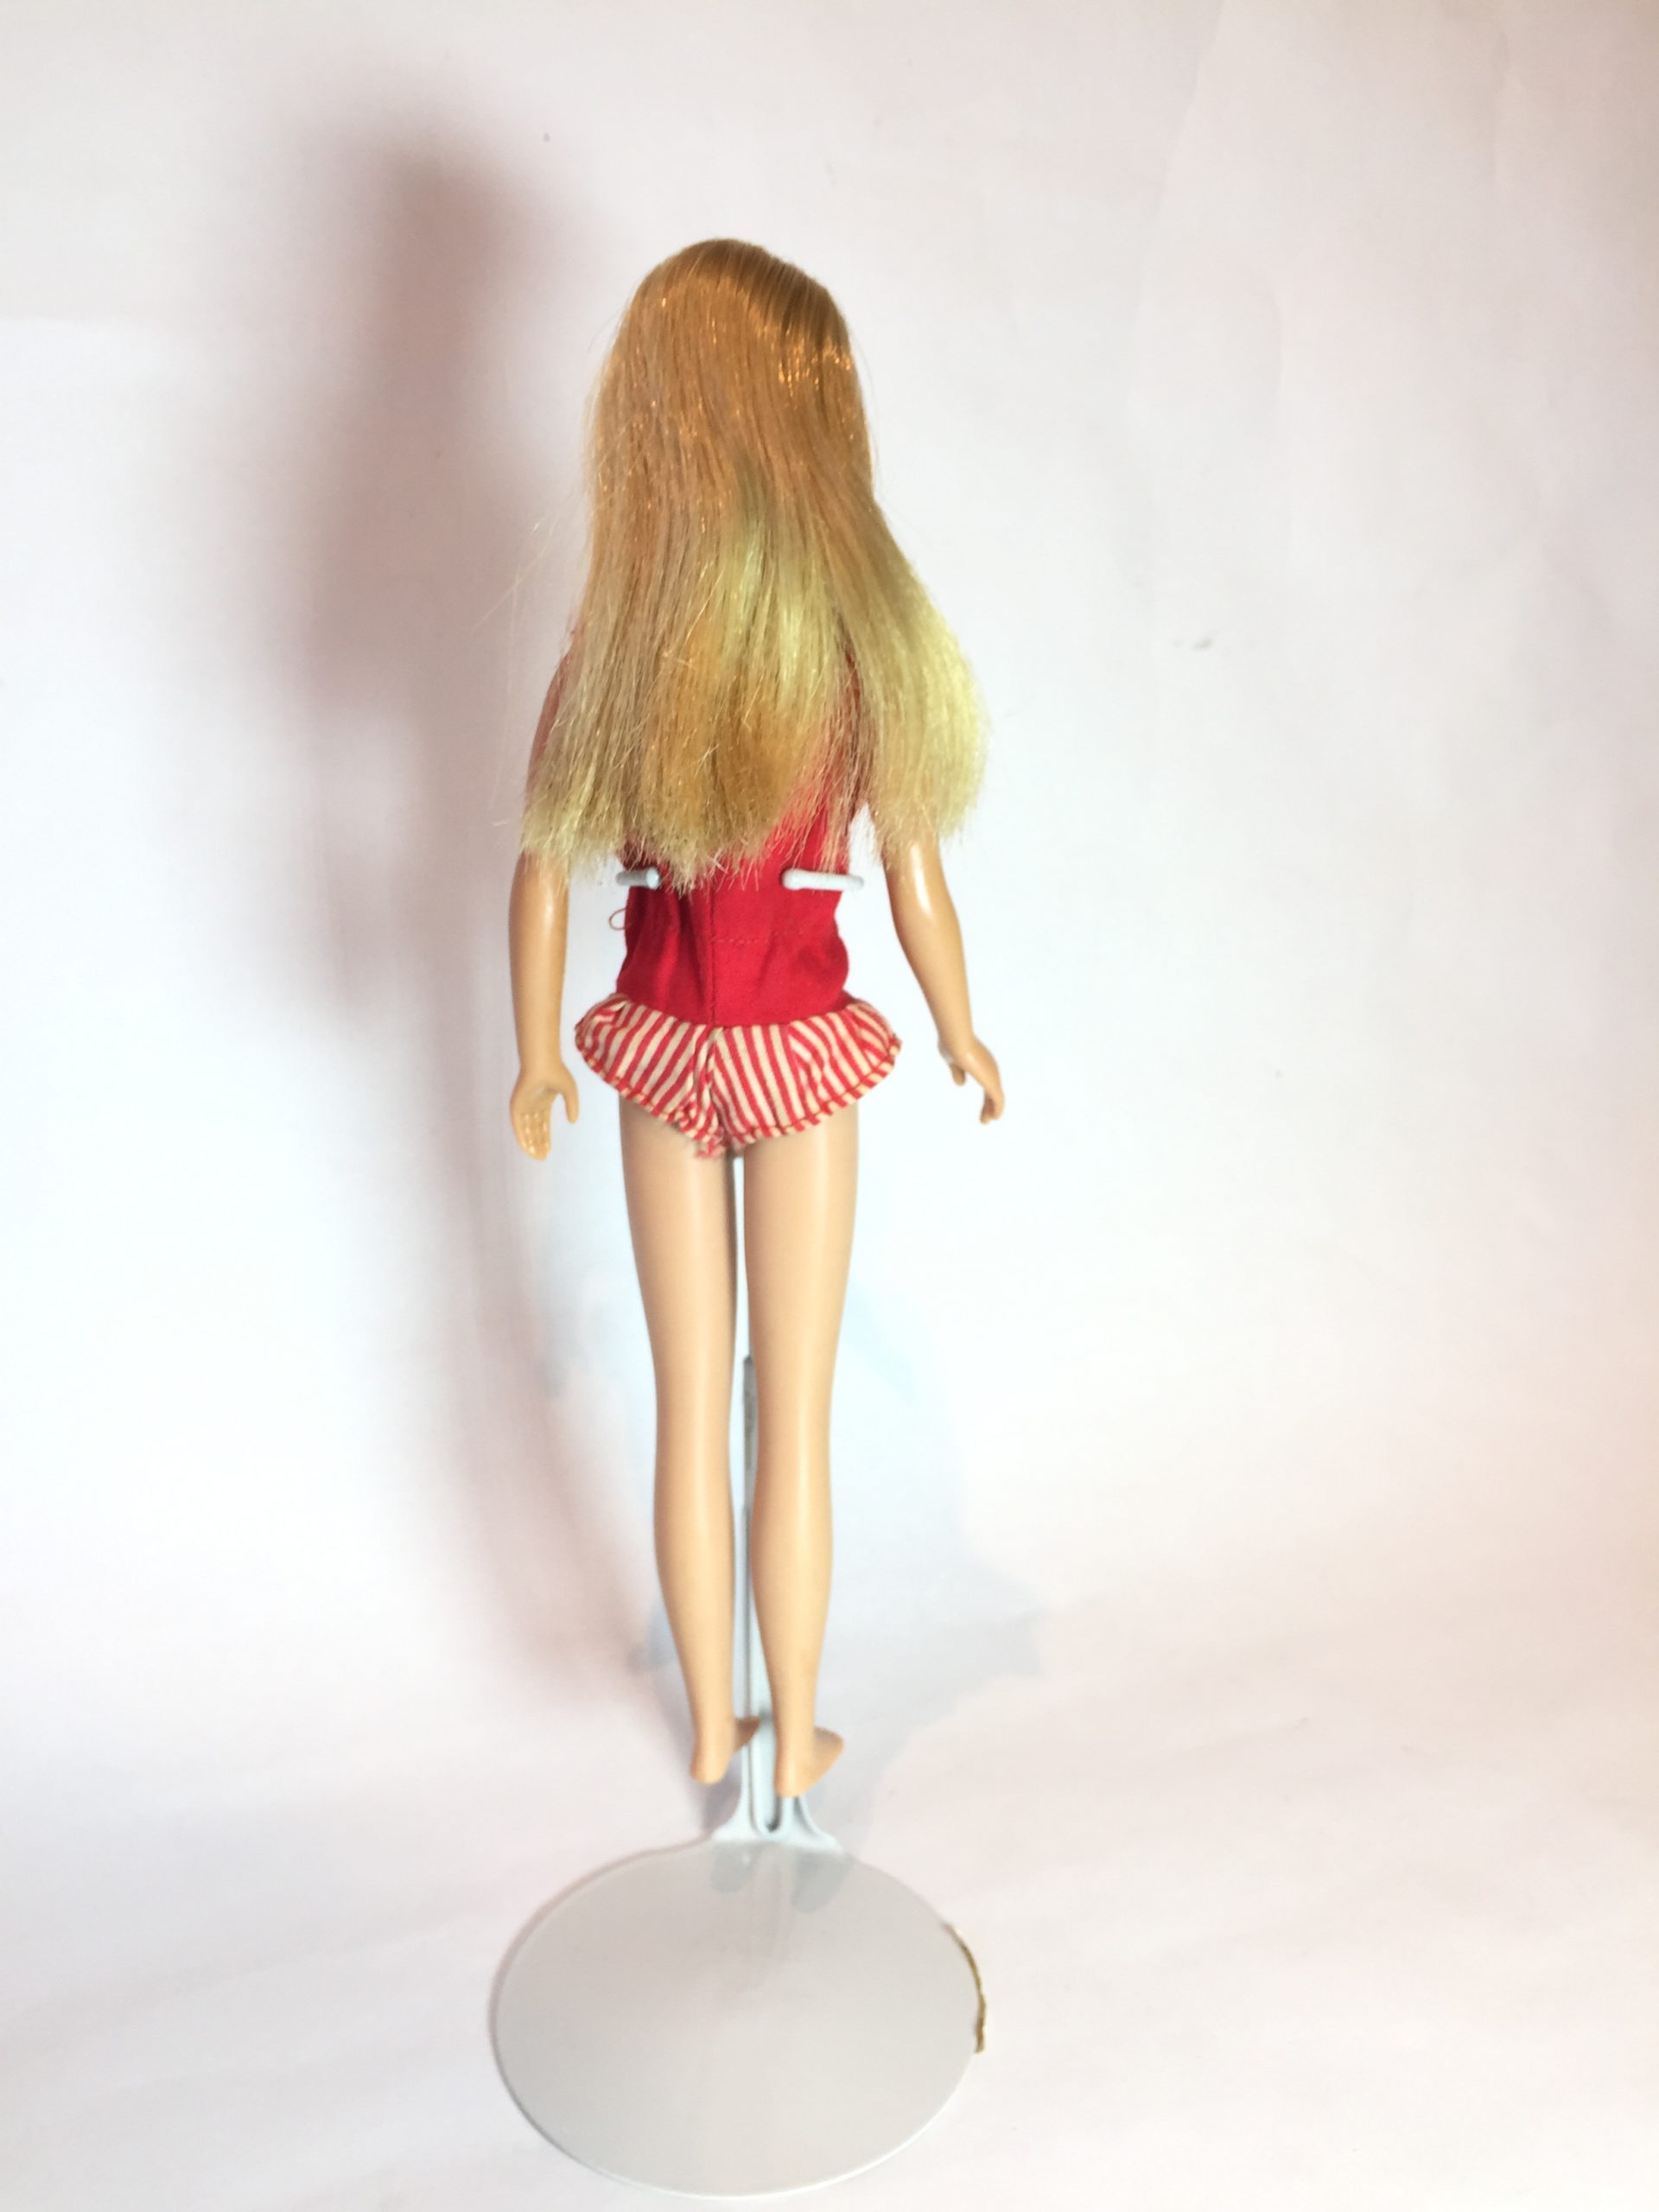 ヴィンテージ スキッパー ブロンドヘアー blond hairドール 1964年 60’s バービー Barbie マテル社 Mattel  オリジナル水着